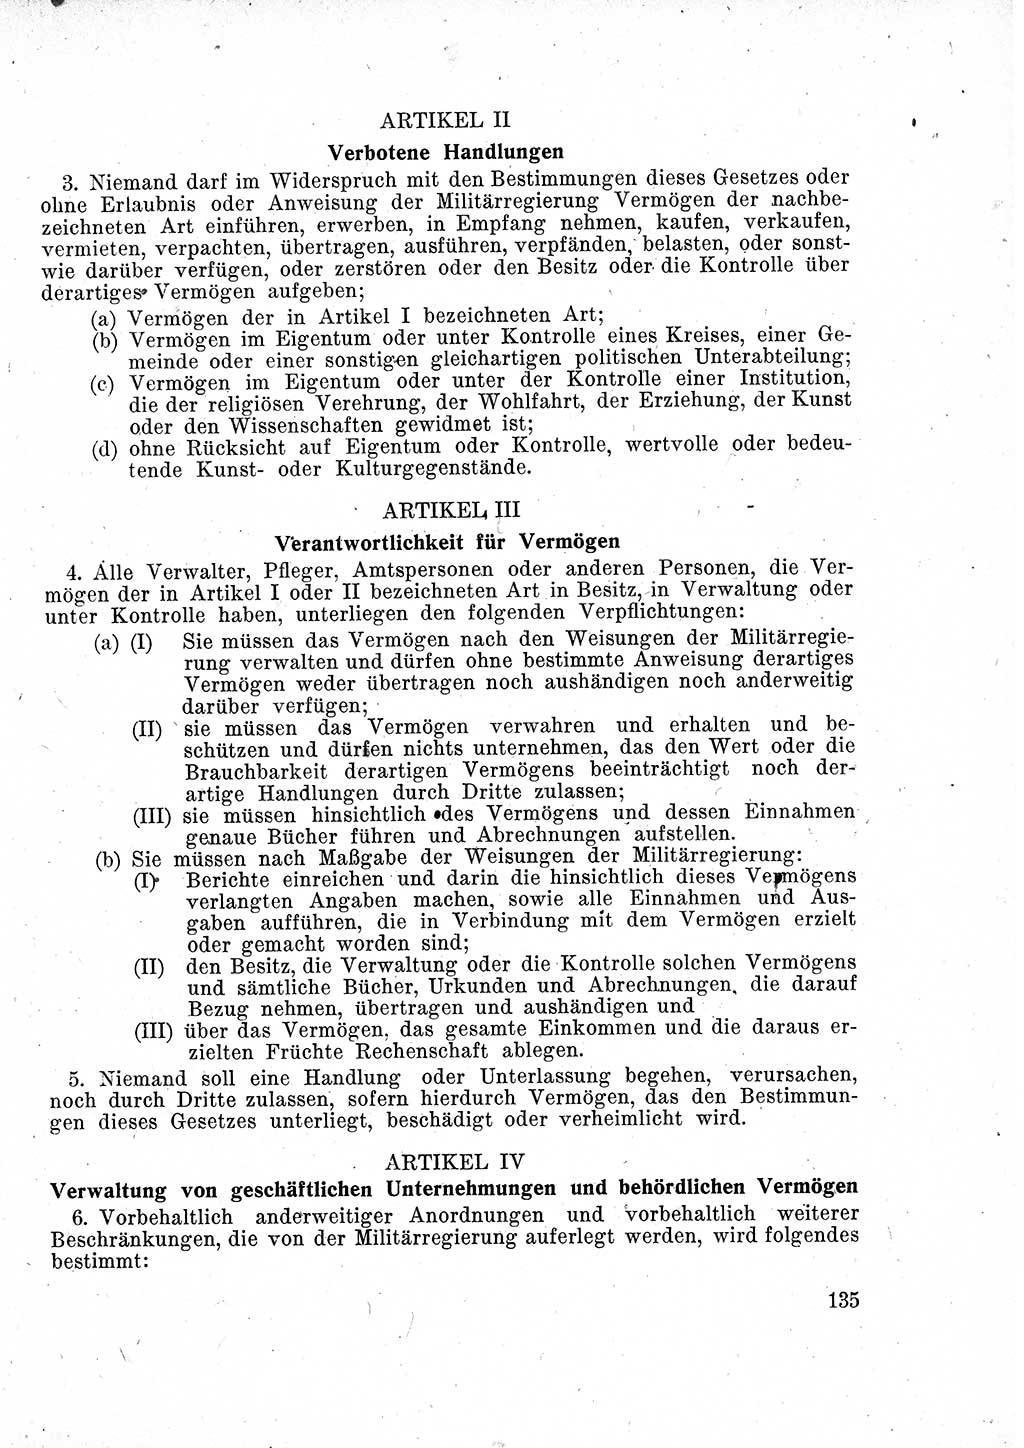 Das Recht der Besatzungsmacht (Deutschland), Proklamationen, Deklerationen, Verordnungen, Gesetze und Bekanntmachungen 1947, Seite 135 (R. Bes. Dtl. 1947, S. 135)